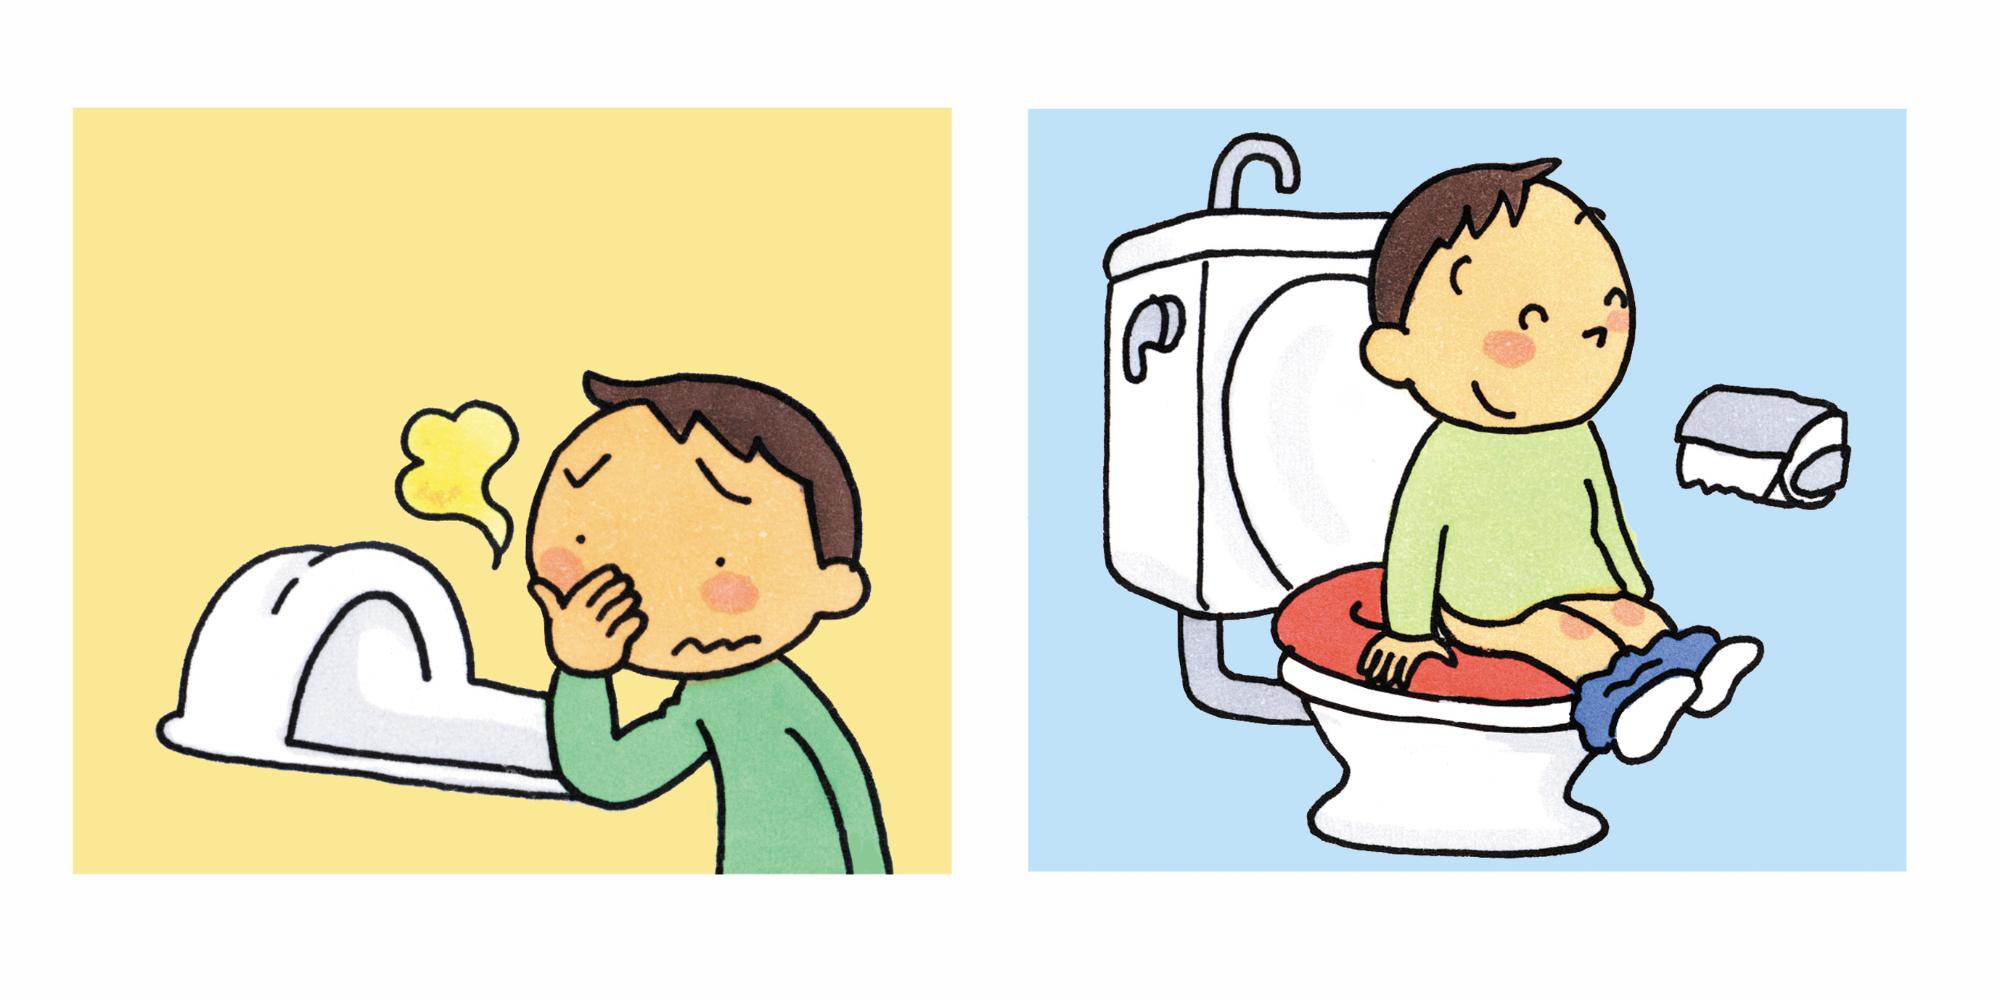 （左から）和式トイレを臭がっている男の子のイラストと洋式トイレで用を足している男の子のイラスト